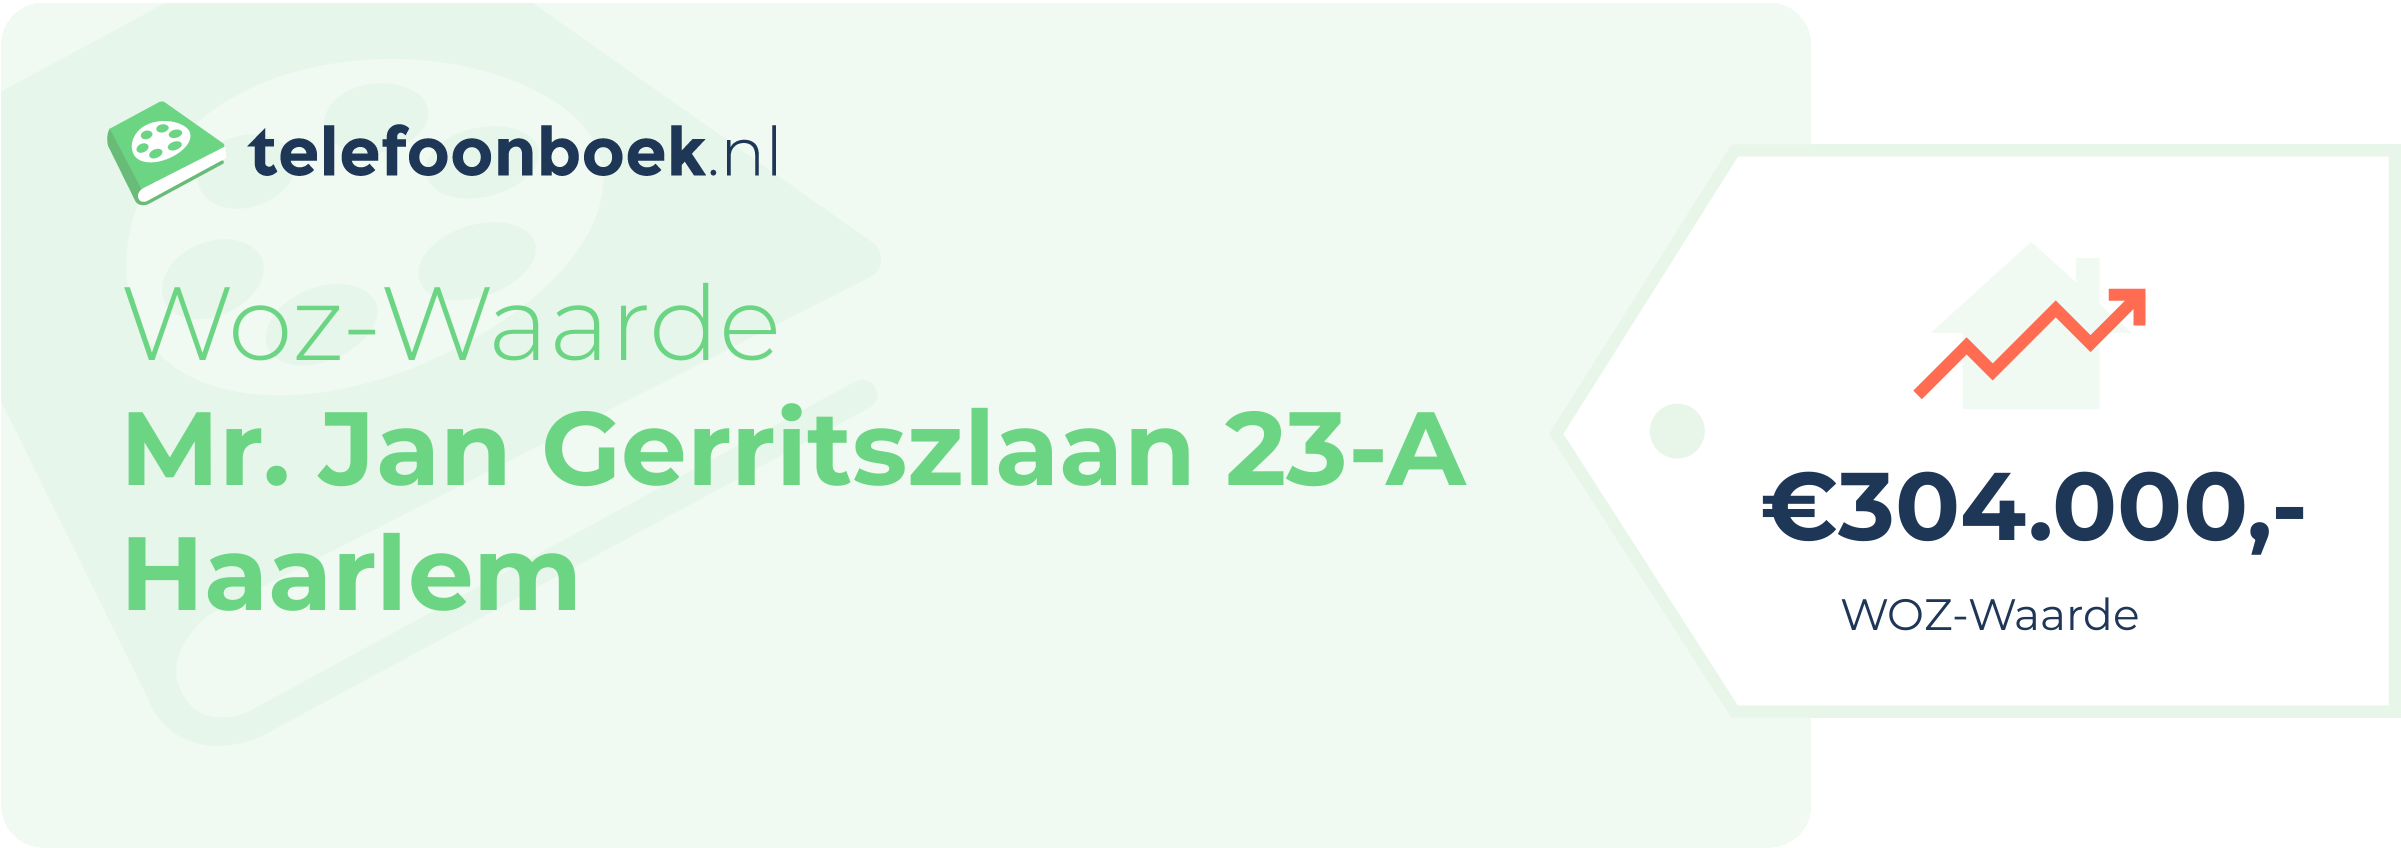 WOZ-waarde Mr. Jan Gerritszlaan 23-A Haarlem